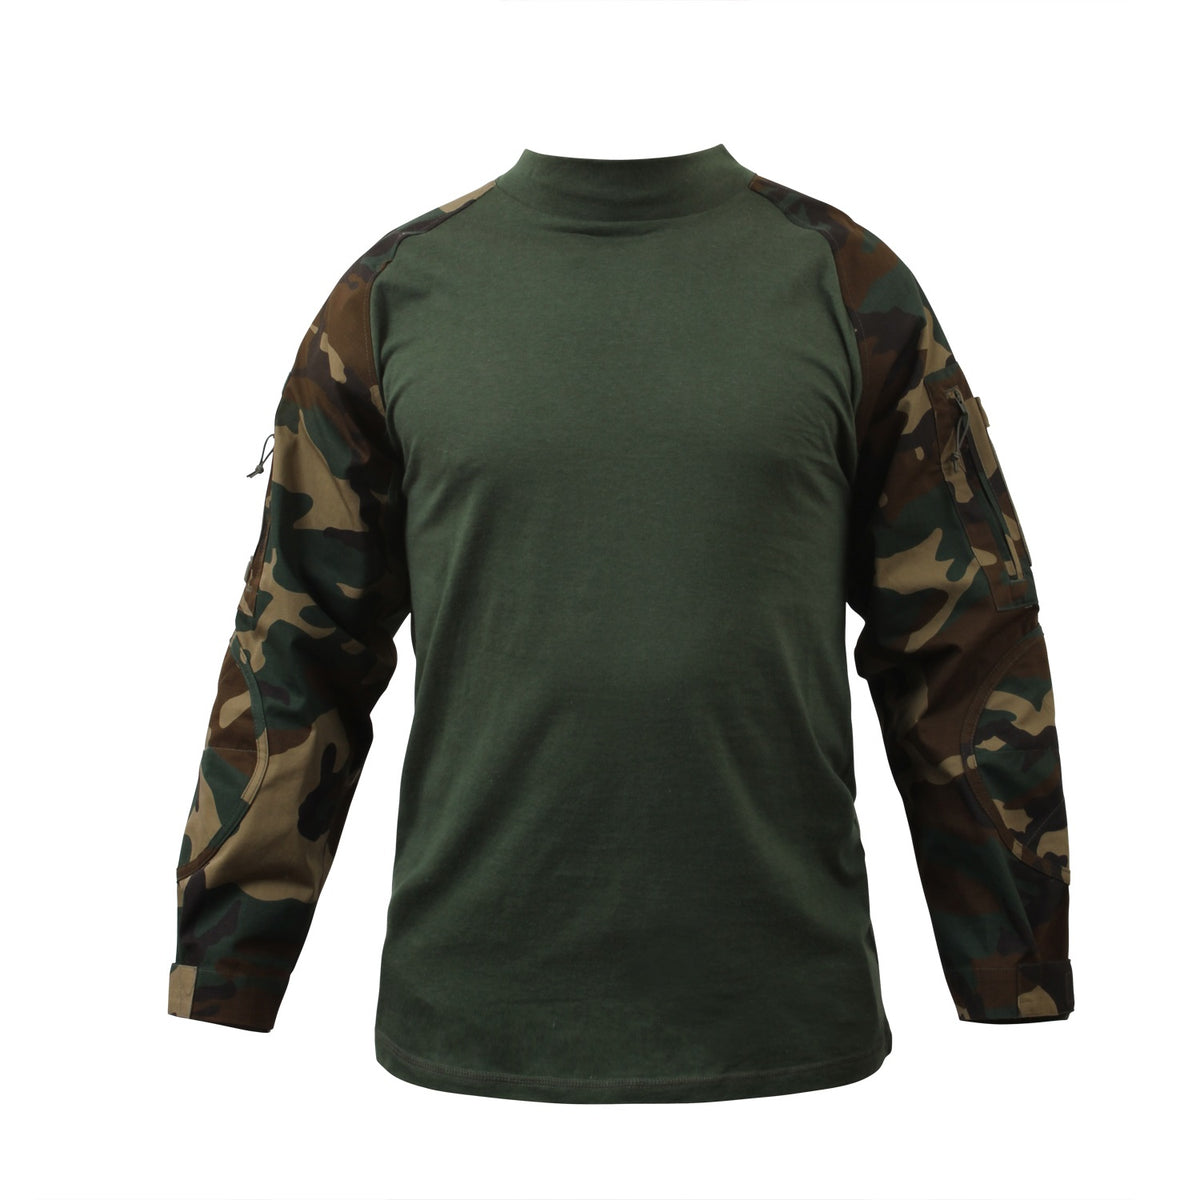 Rothco Military NYCO FR Fire Retardant Combat Shirt Woodland Camo